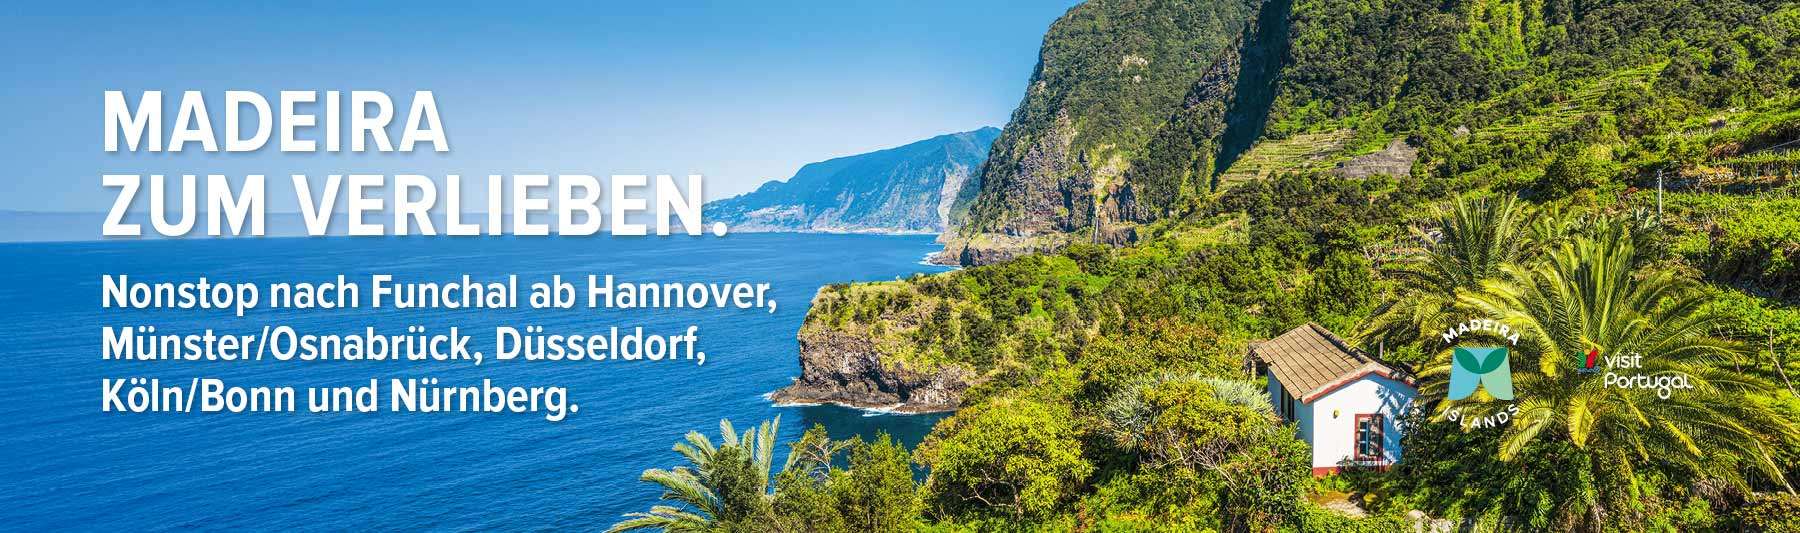 Portugiesische Träume: Algarve und Madeira